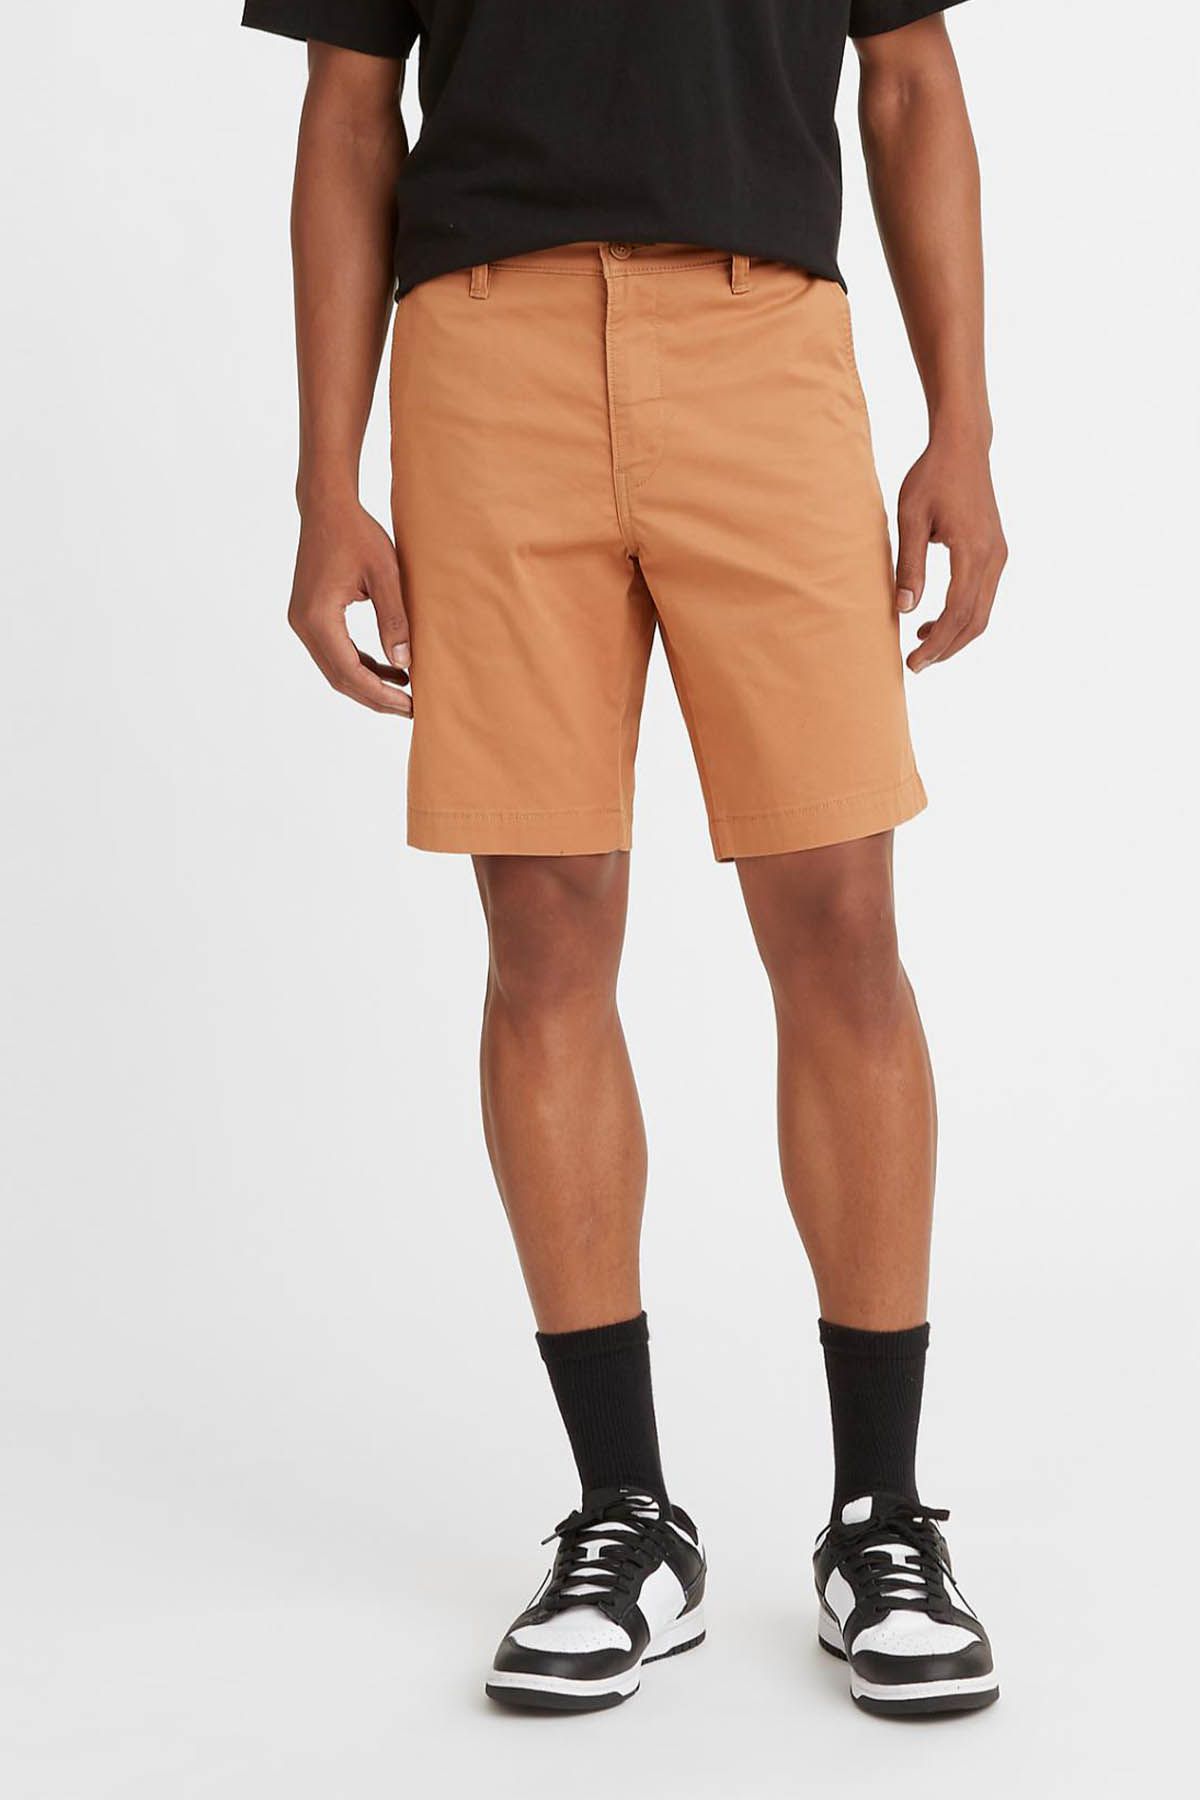 Levi's ® XX Chino Short Buffalo Brown Men Shorts